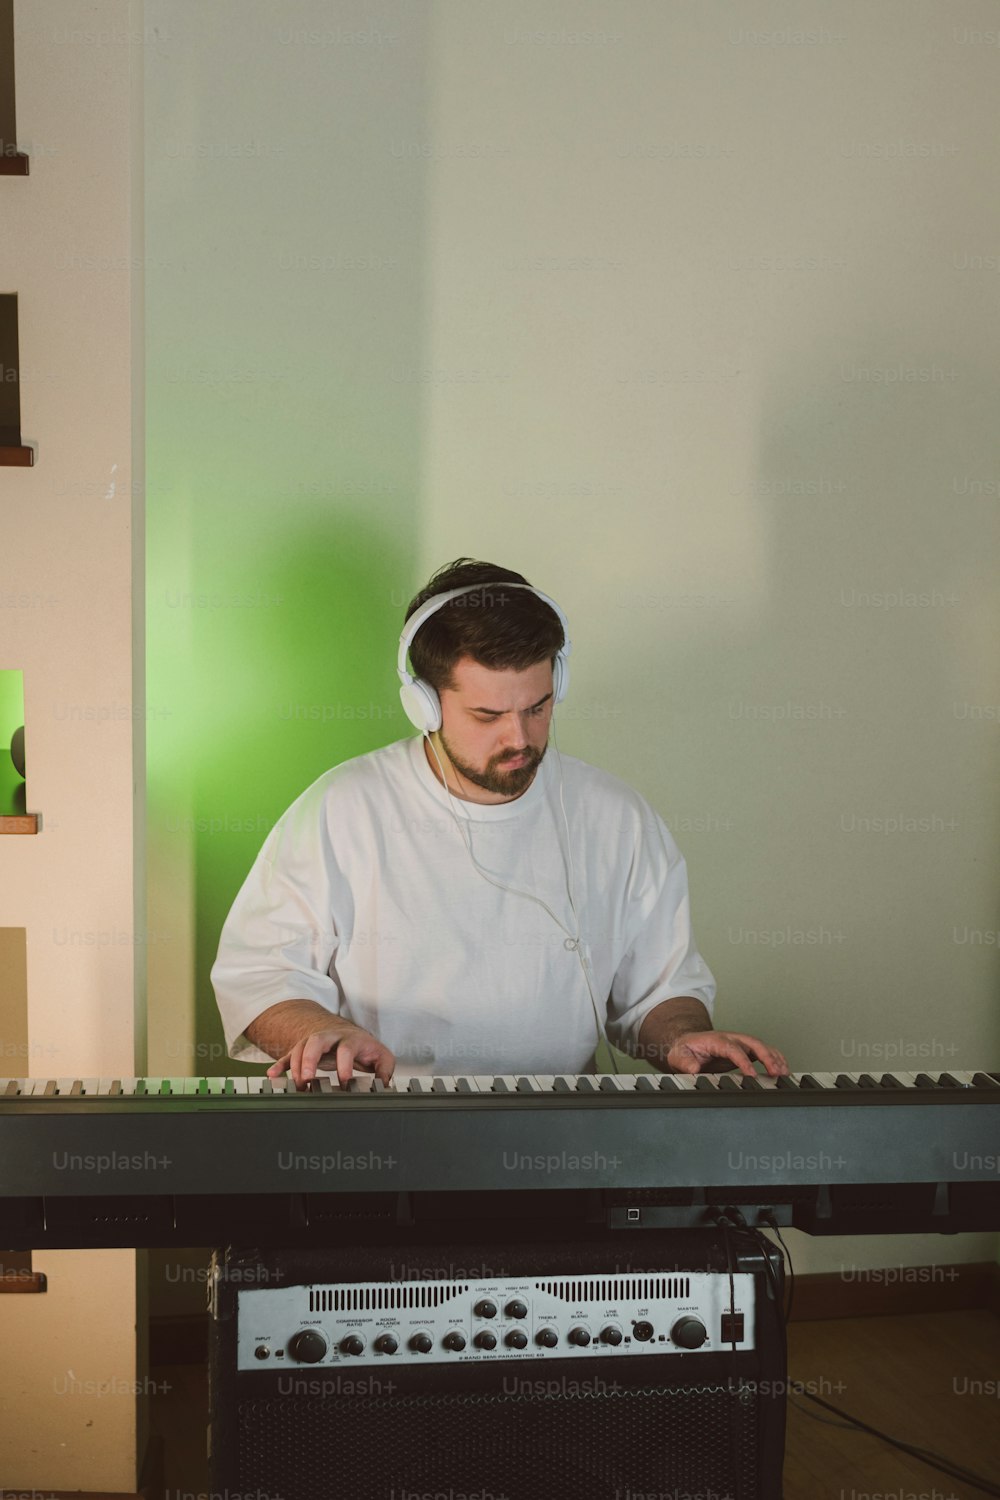 Ein Mann in einem weißen Hemd spielt ein Keyboard